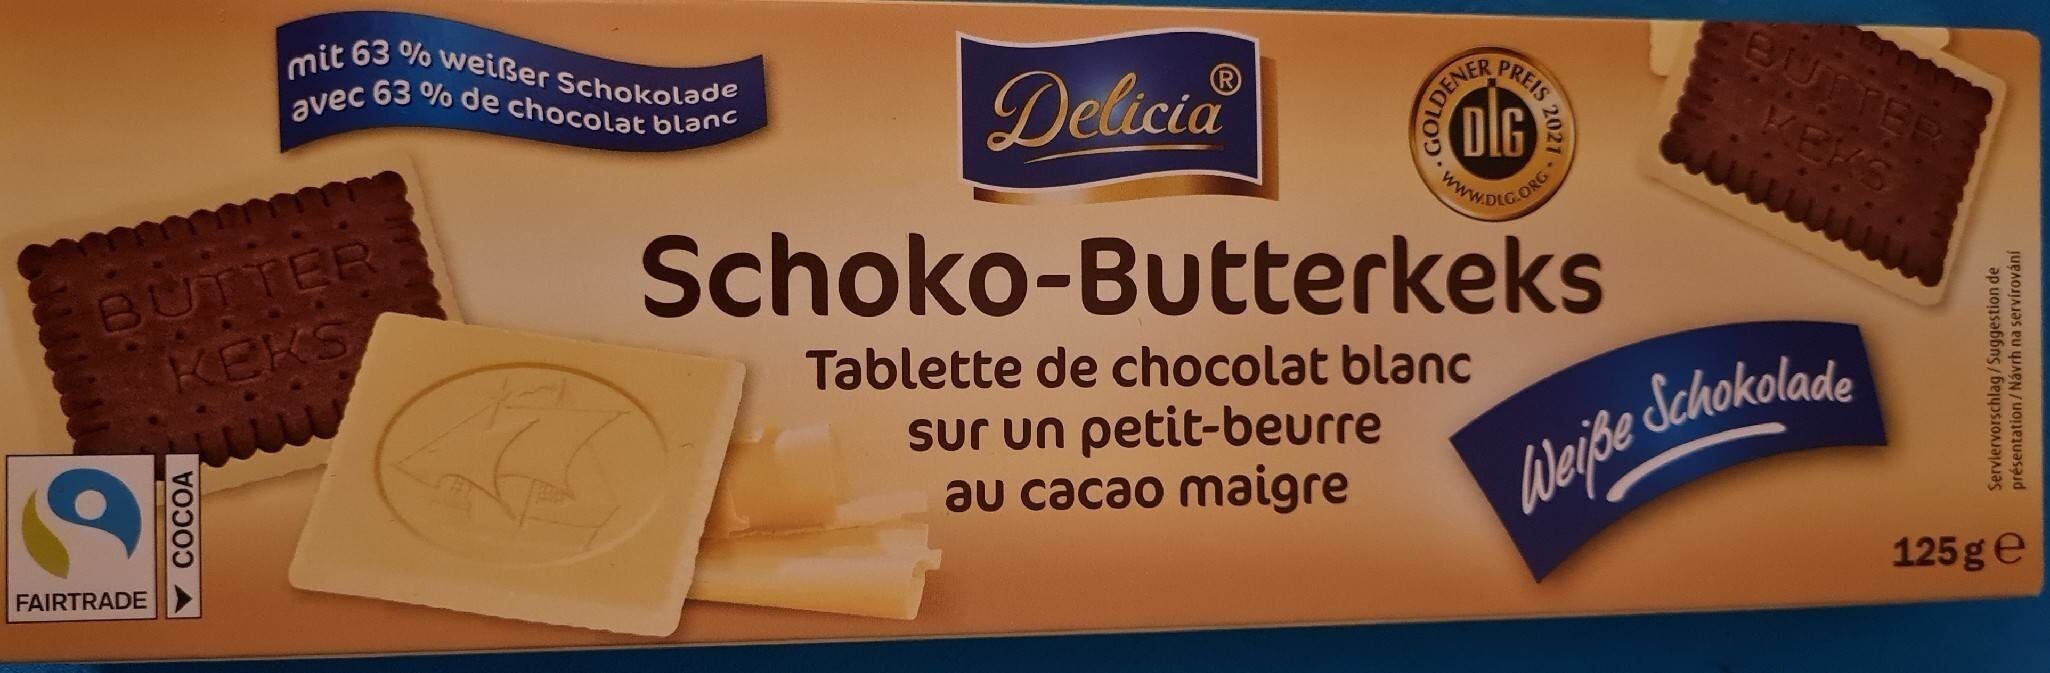 Schoko Butterkeks Weisse Schokolade - Produkt